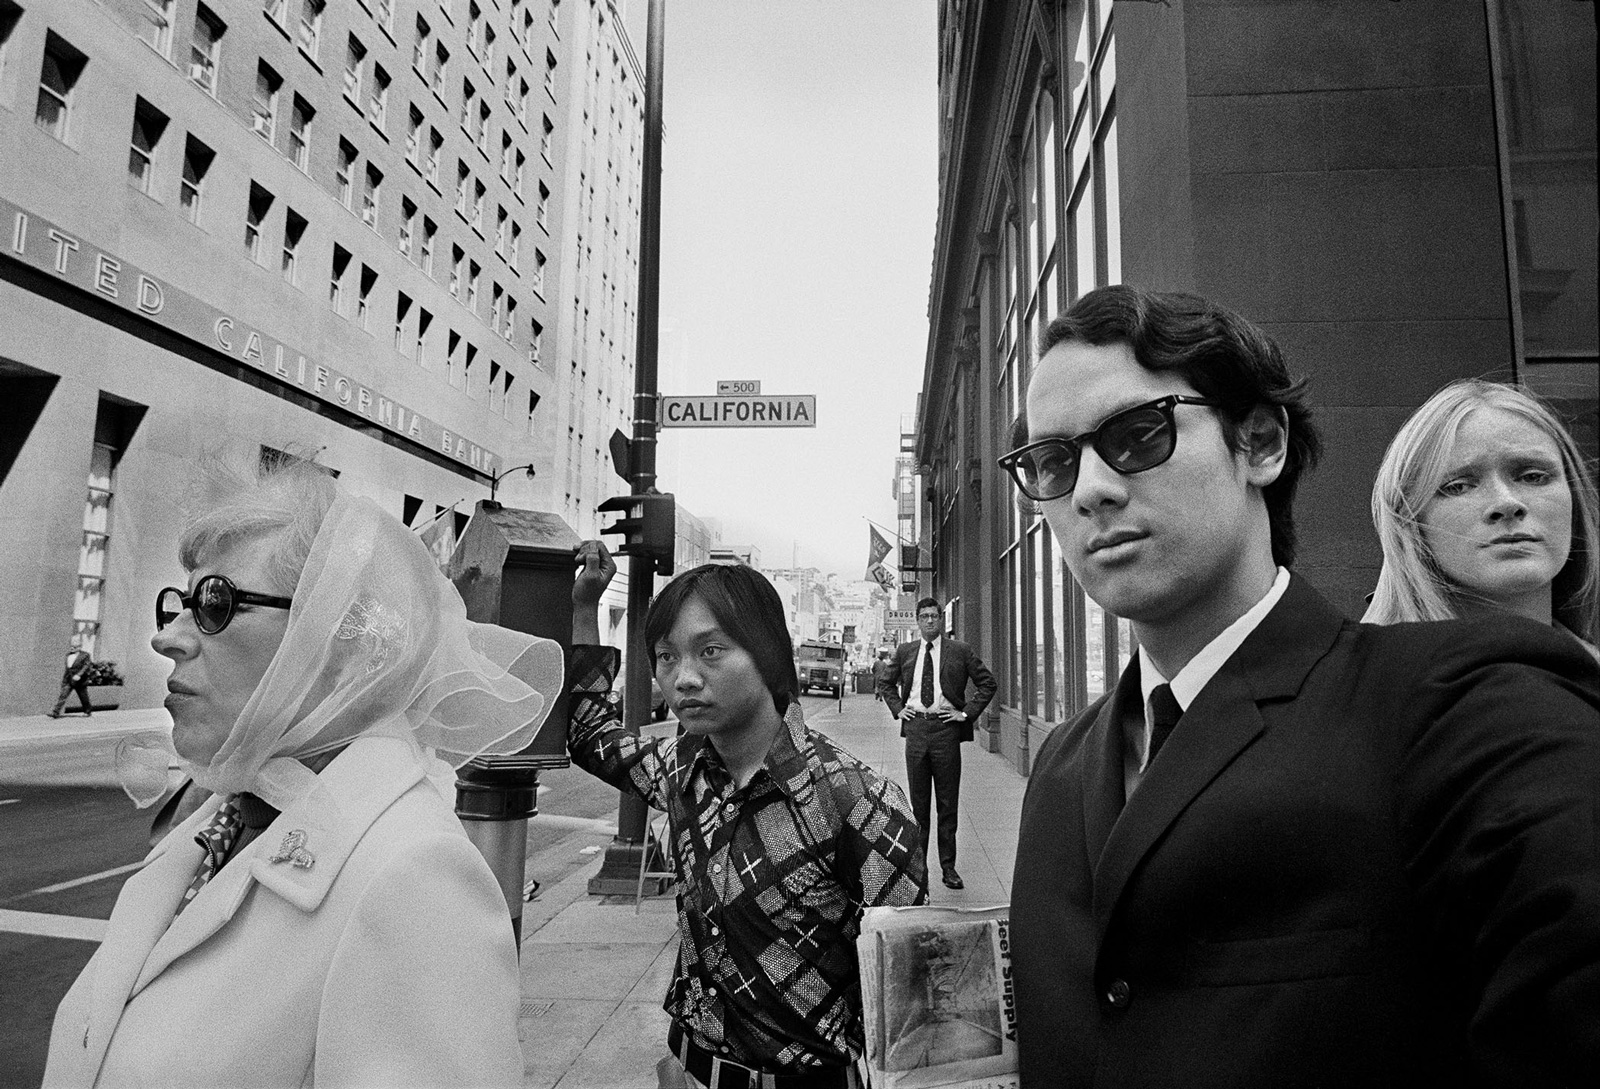 Michael Jang: Self-Portrait, Financial District, San Francisco, 1973